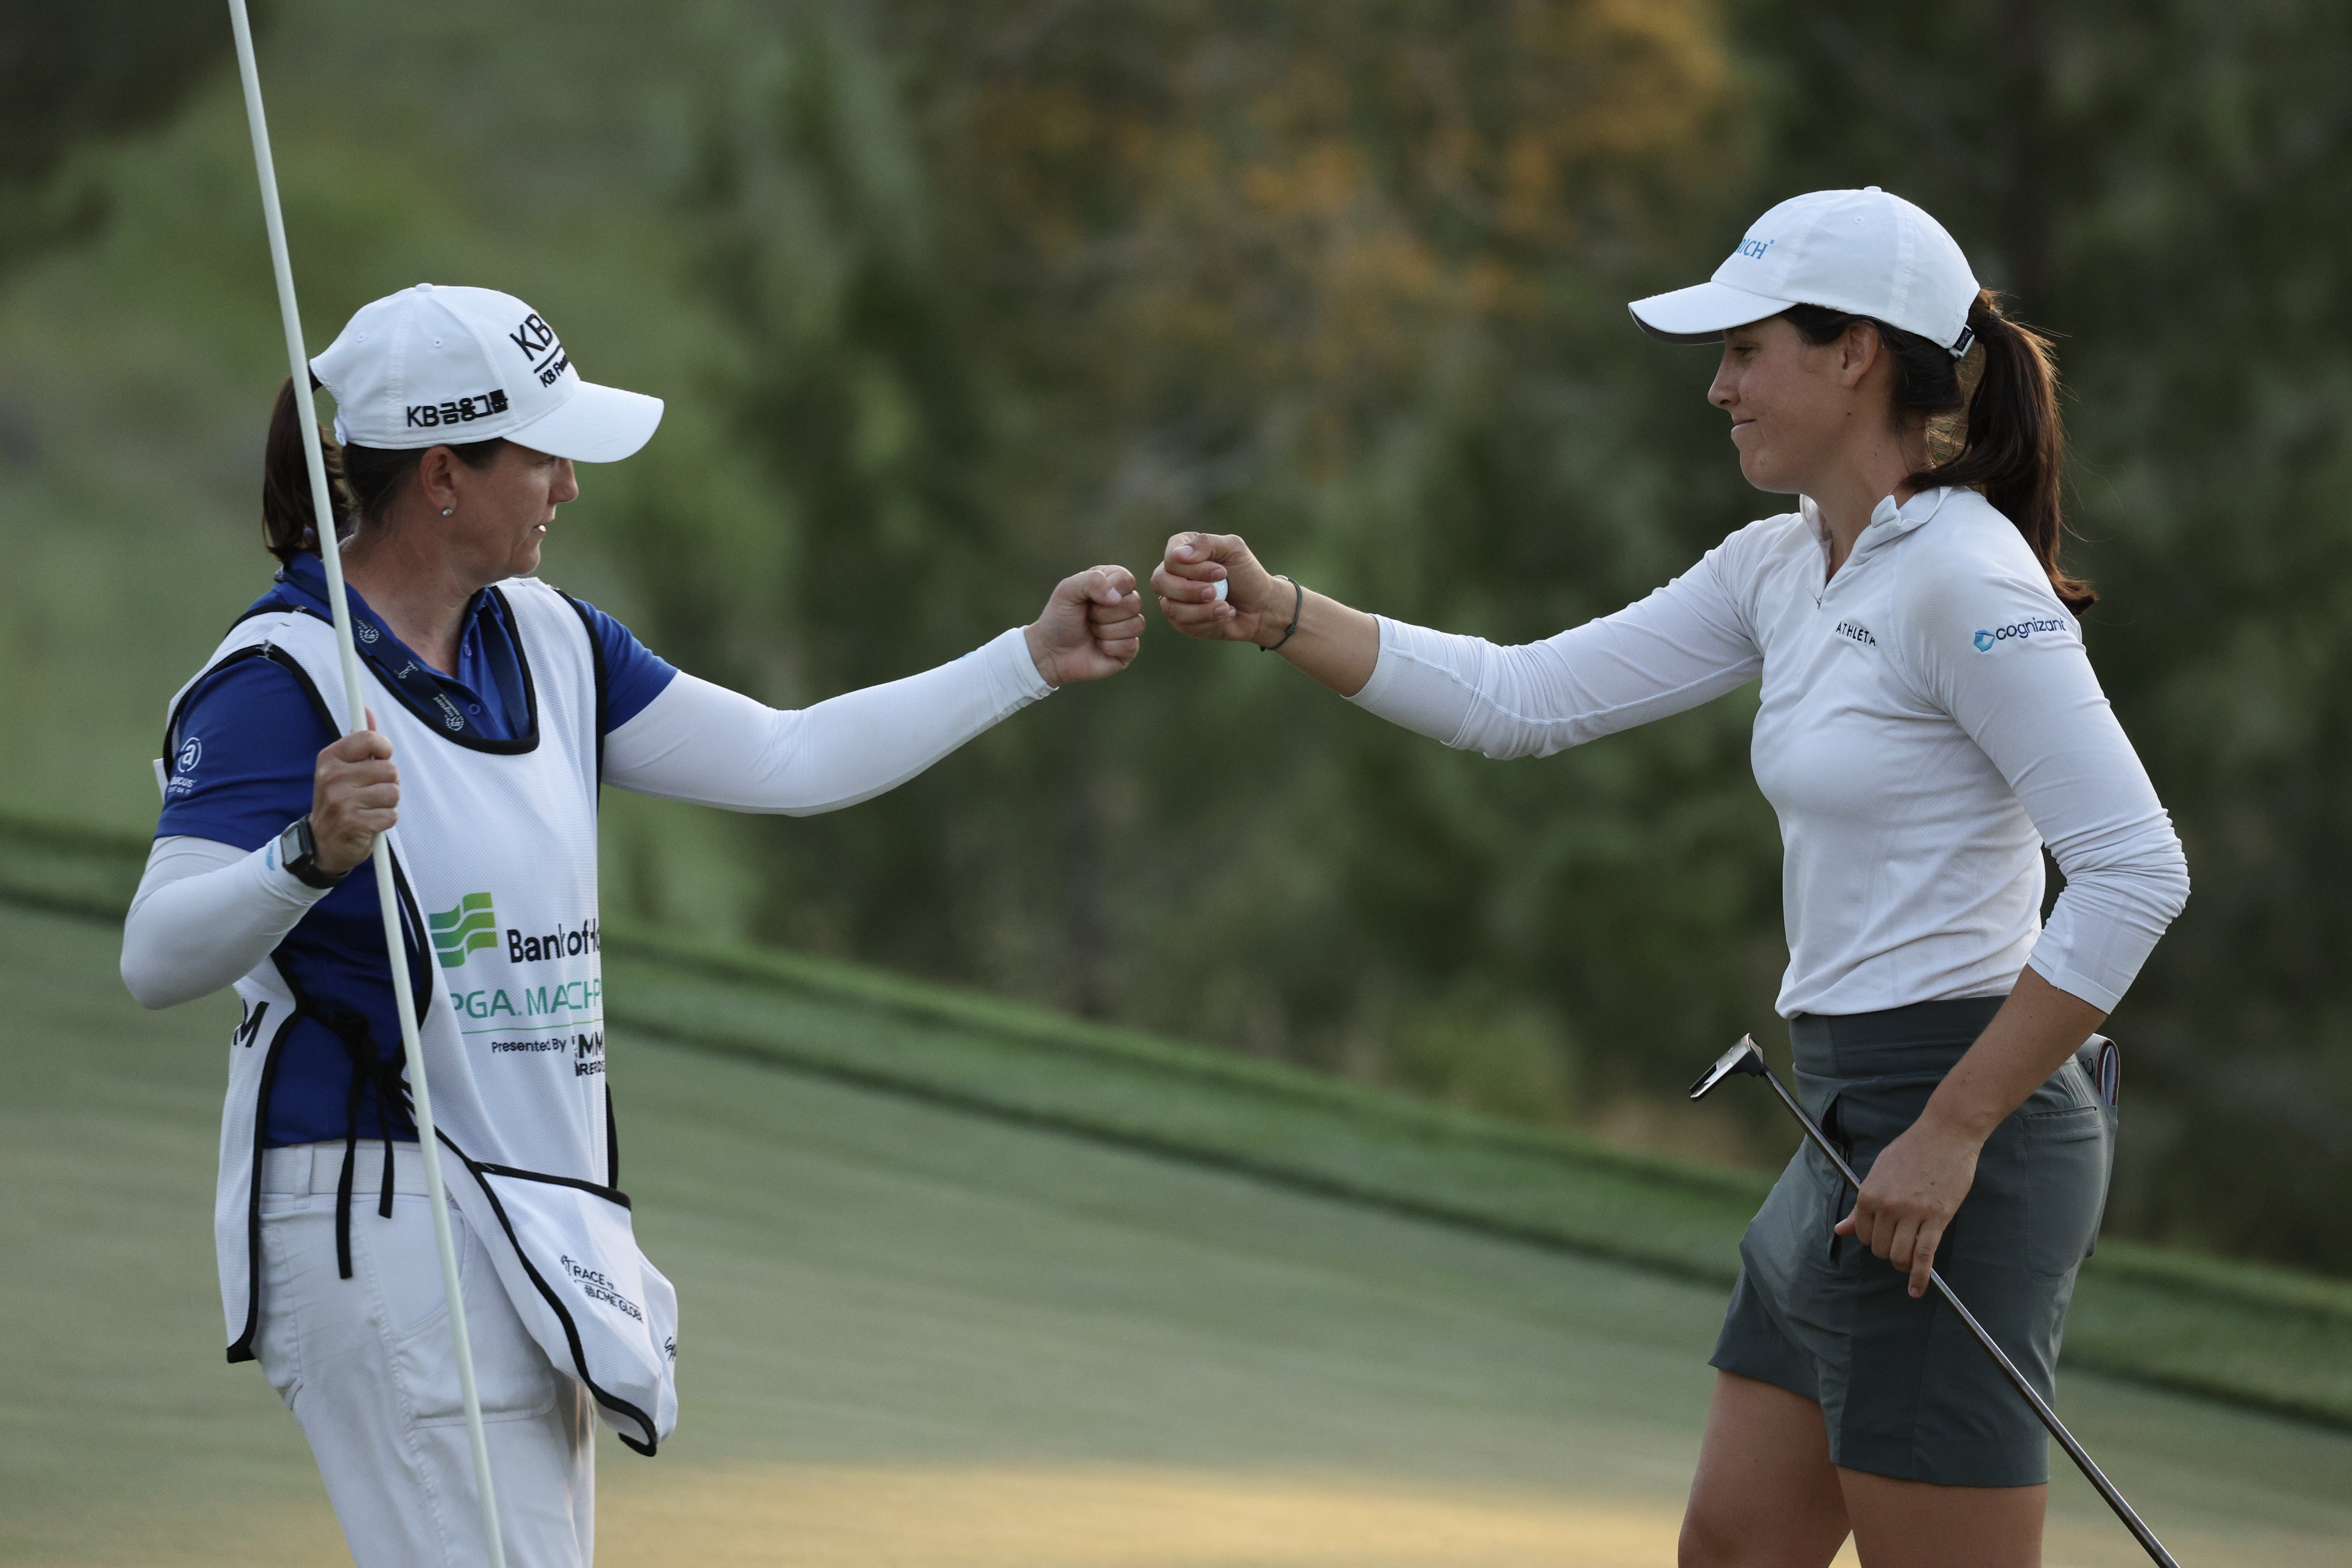 Women's Golf Apparel Still Taking Shape - SCOREGolf